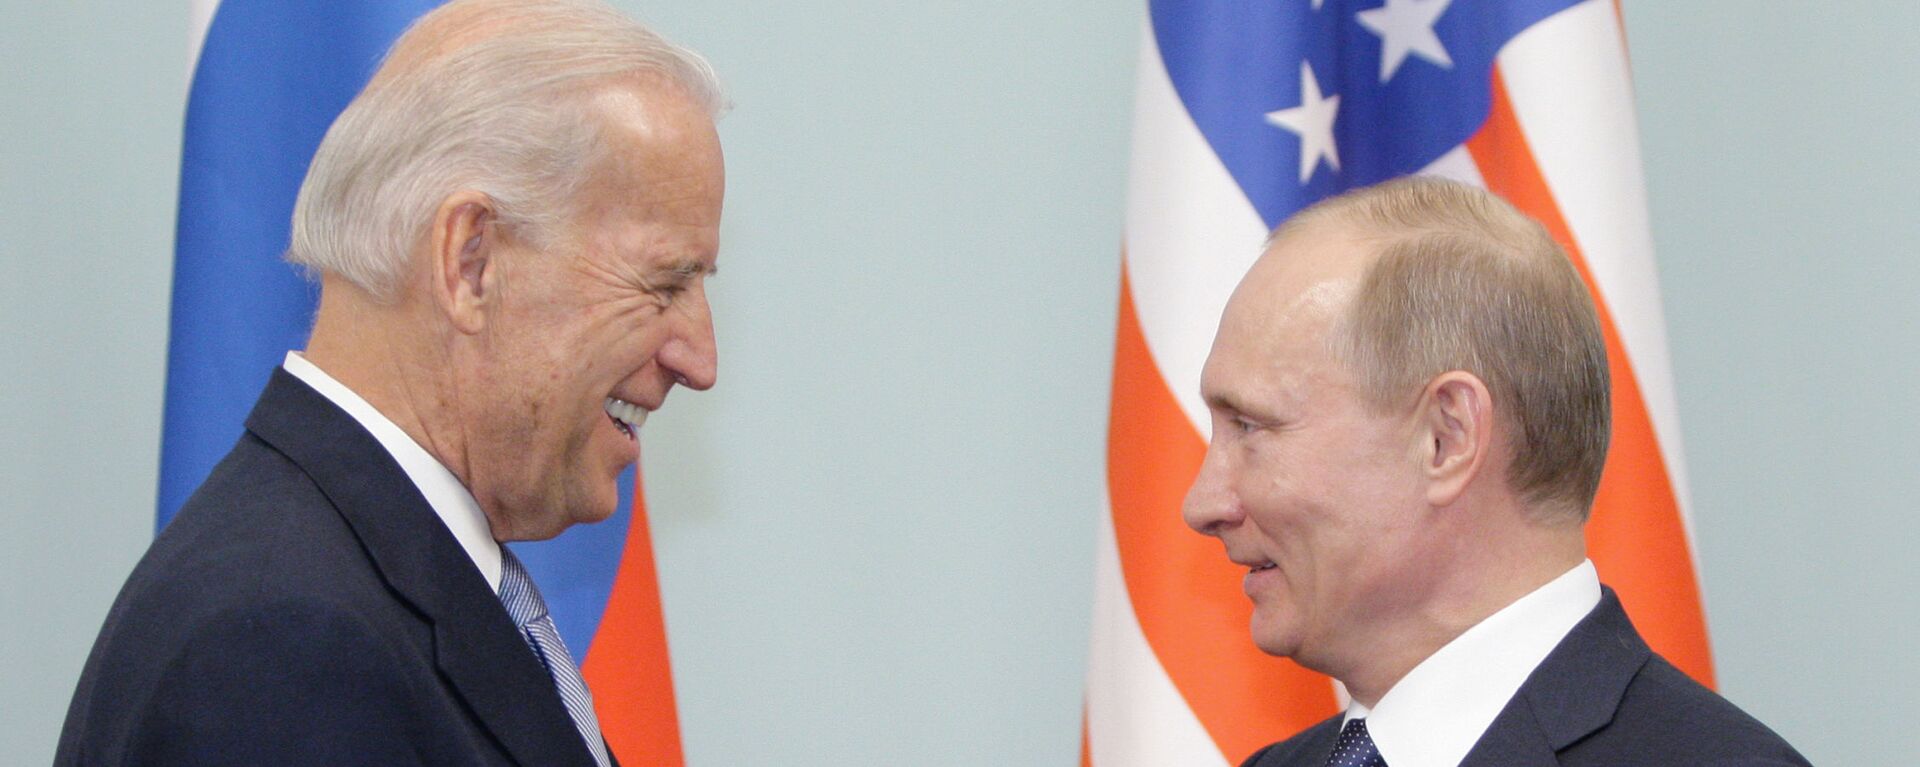 Cuộc gặp giữa thủ tướng Nga Vladimir Putin và phó tổng thống Hoa Kỳ Joe Biden, năm 2011 - Sputnik Việt Nam, 1920, 26.05.2021